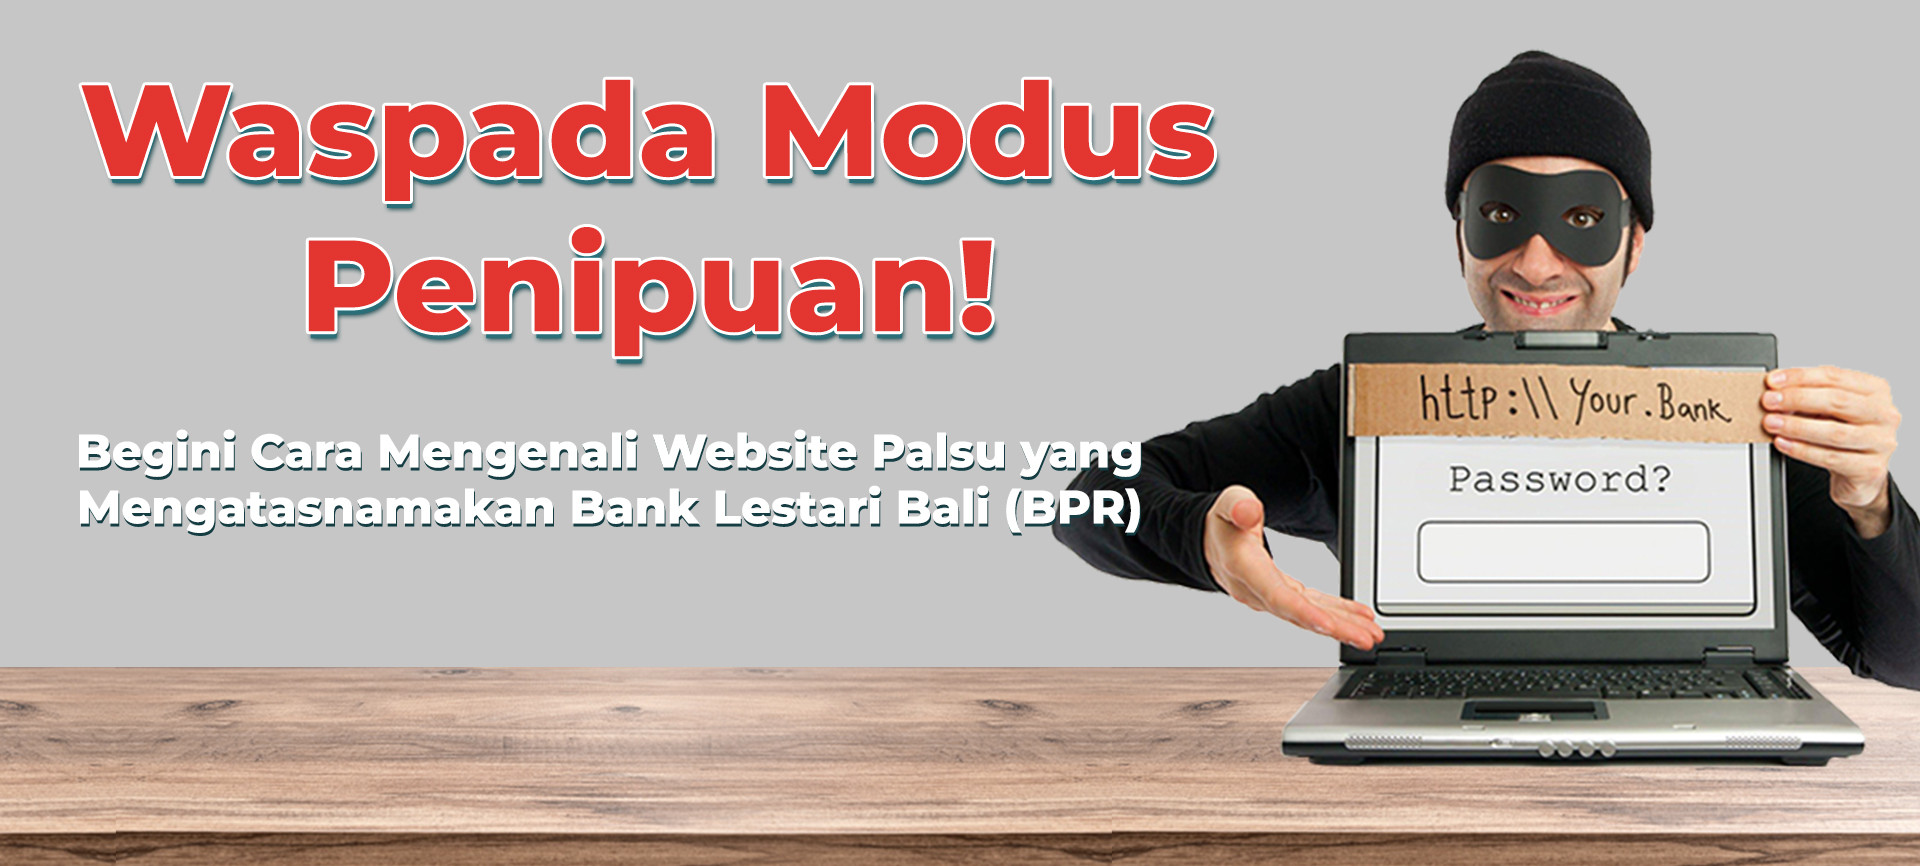 Waspada Modus Penipuan! Begini Cara Mengenali Website Palsu yang Mengatasnamakan Bank Lestari Bali (BPR)